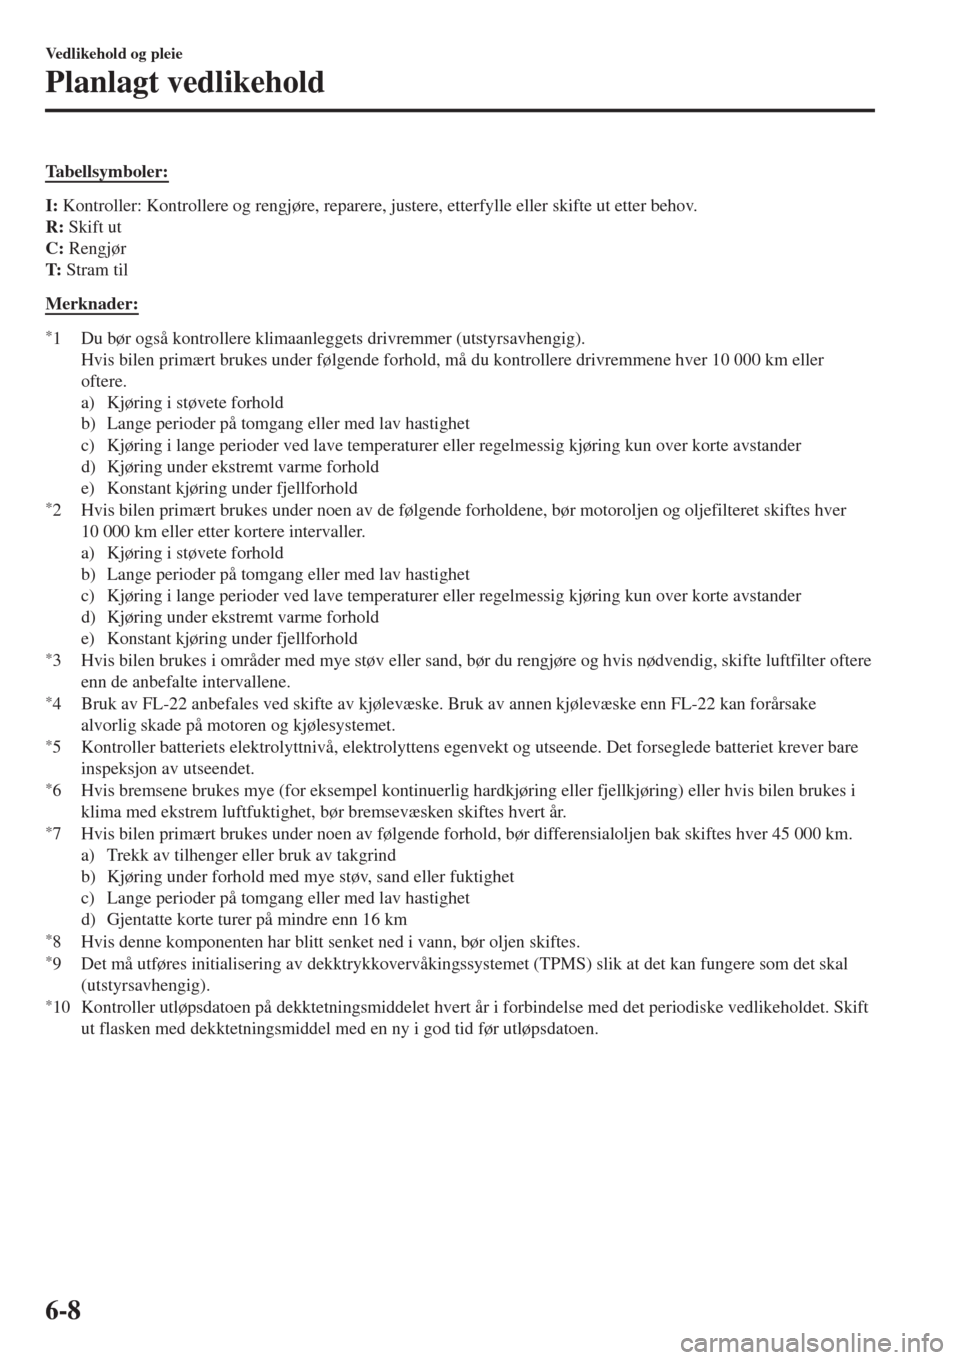 MAZDA MODEL CX-3 2015  Brukerhåndbok (in Norwegian) Tabellsymboler:
I: Kontroller: Kontrollere og rengjøre, reparere, justere, etterfylle eller skifte ut etter behov.
R: Skift ut
C: Rengjør
T: Stram til
Merknader:
*1 Du bør også kontrollere klimaan